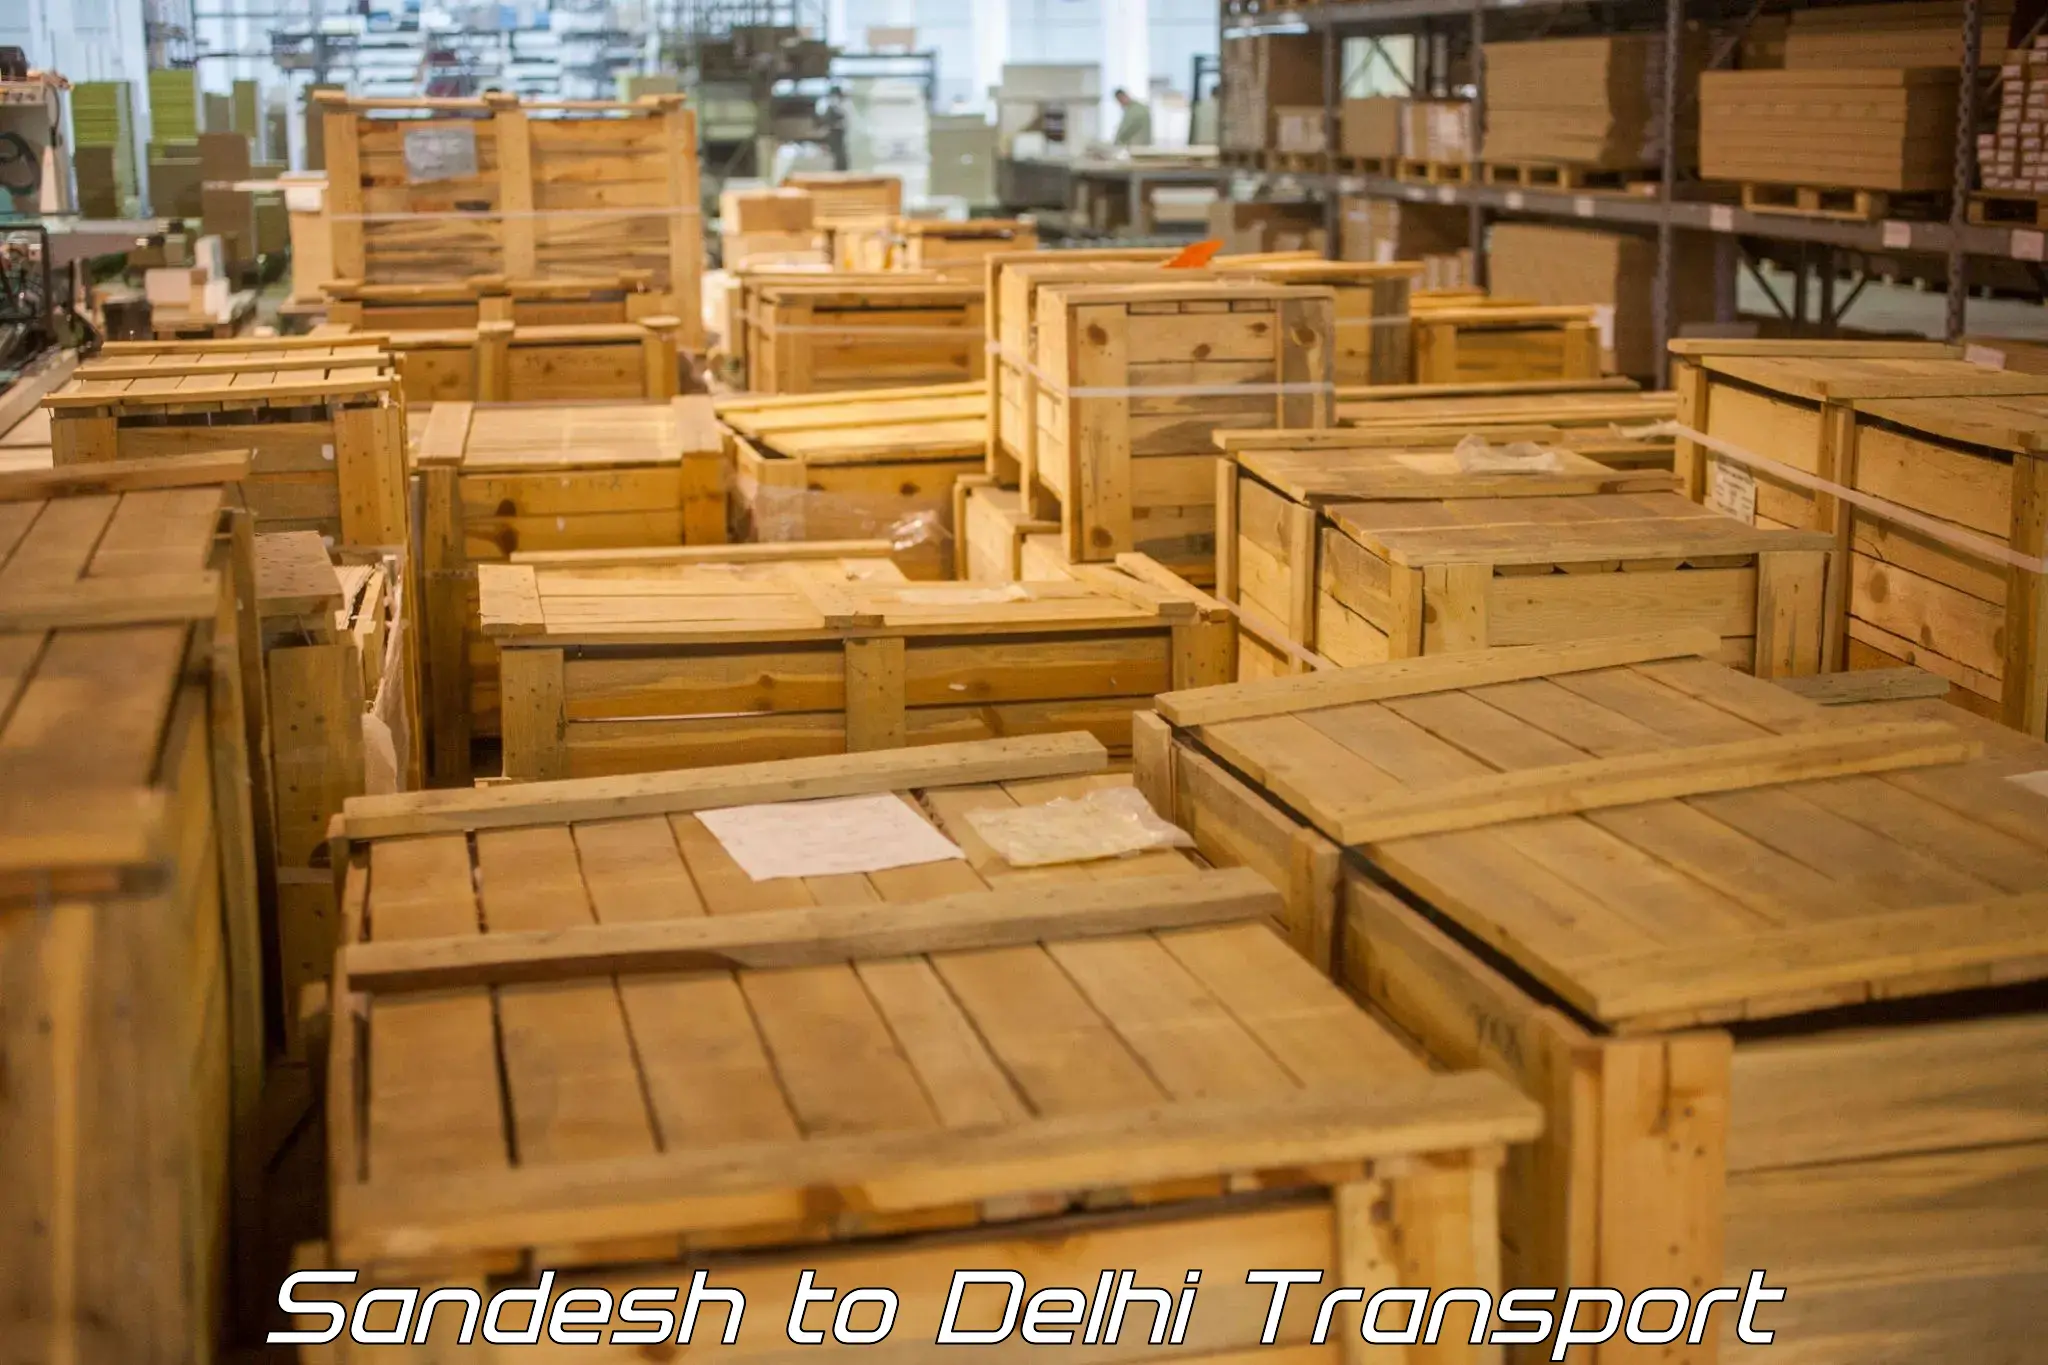 Online transport booking Sandesh to IIT Delhi